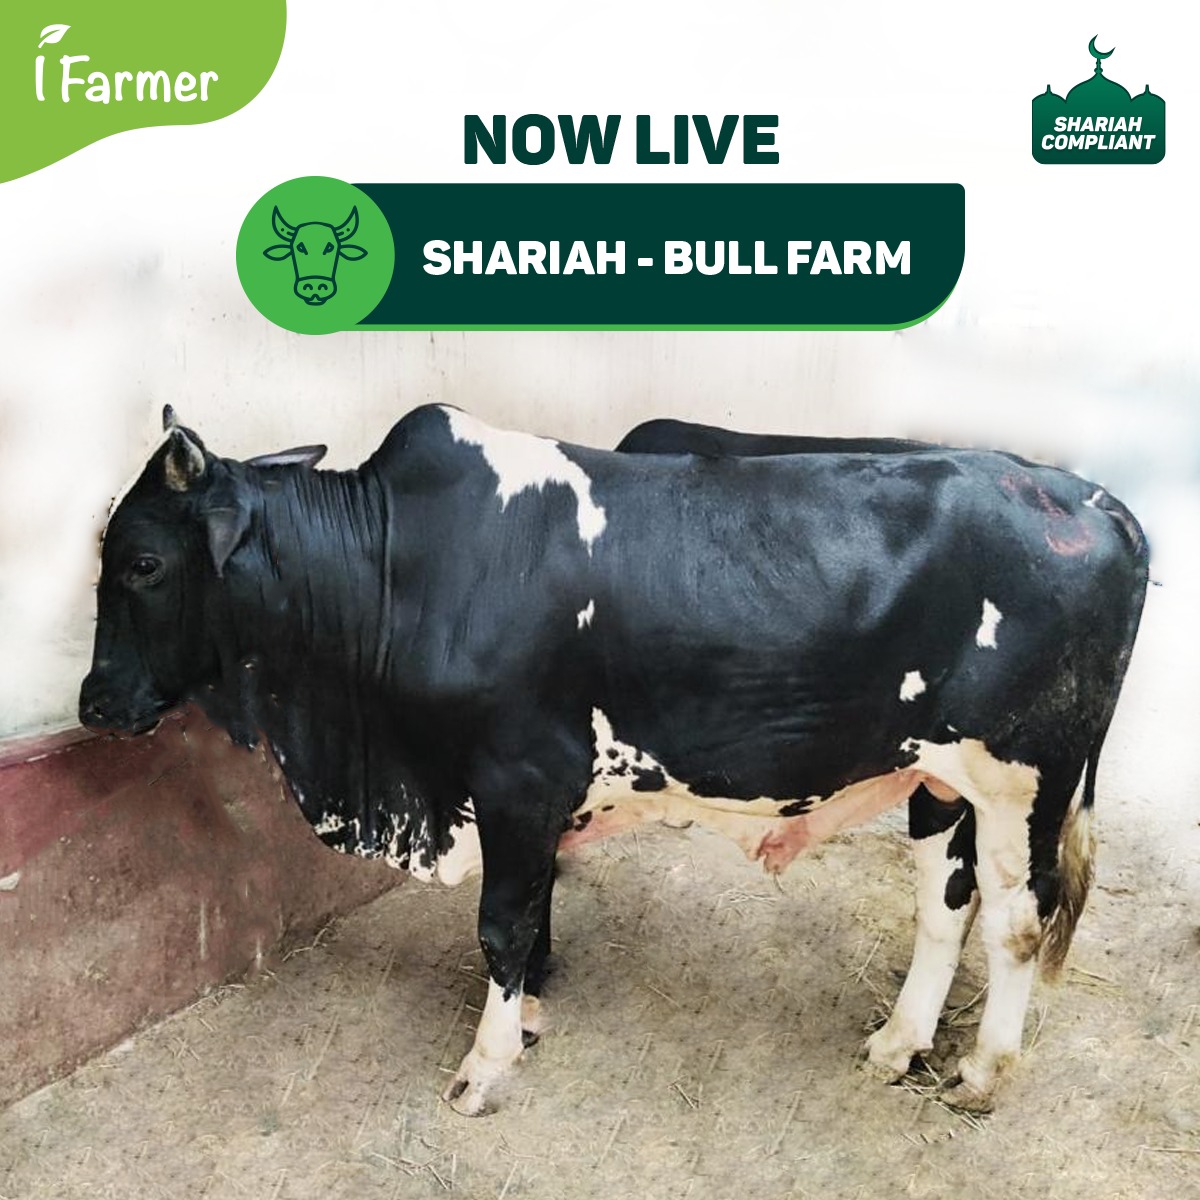 Shariah - Bull Farm